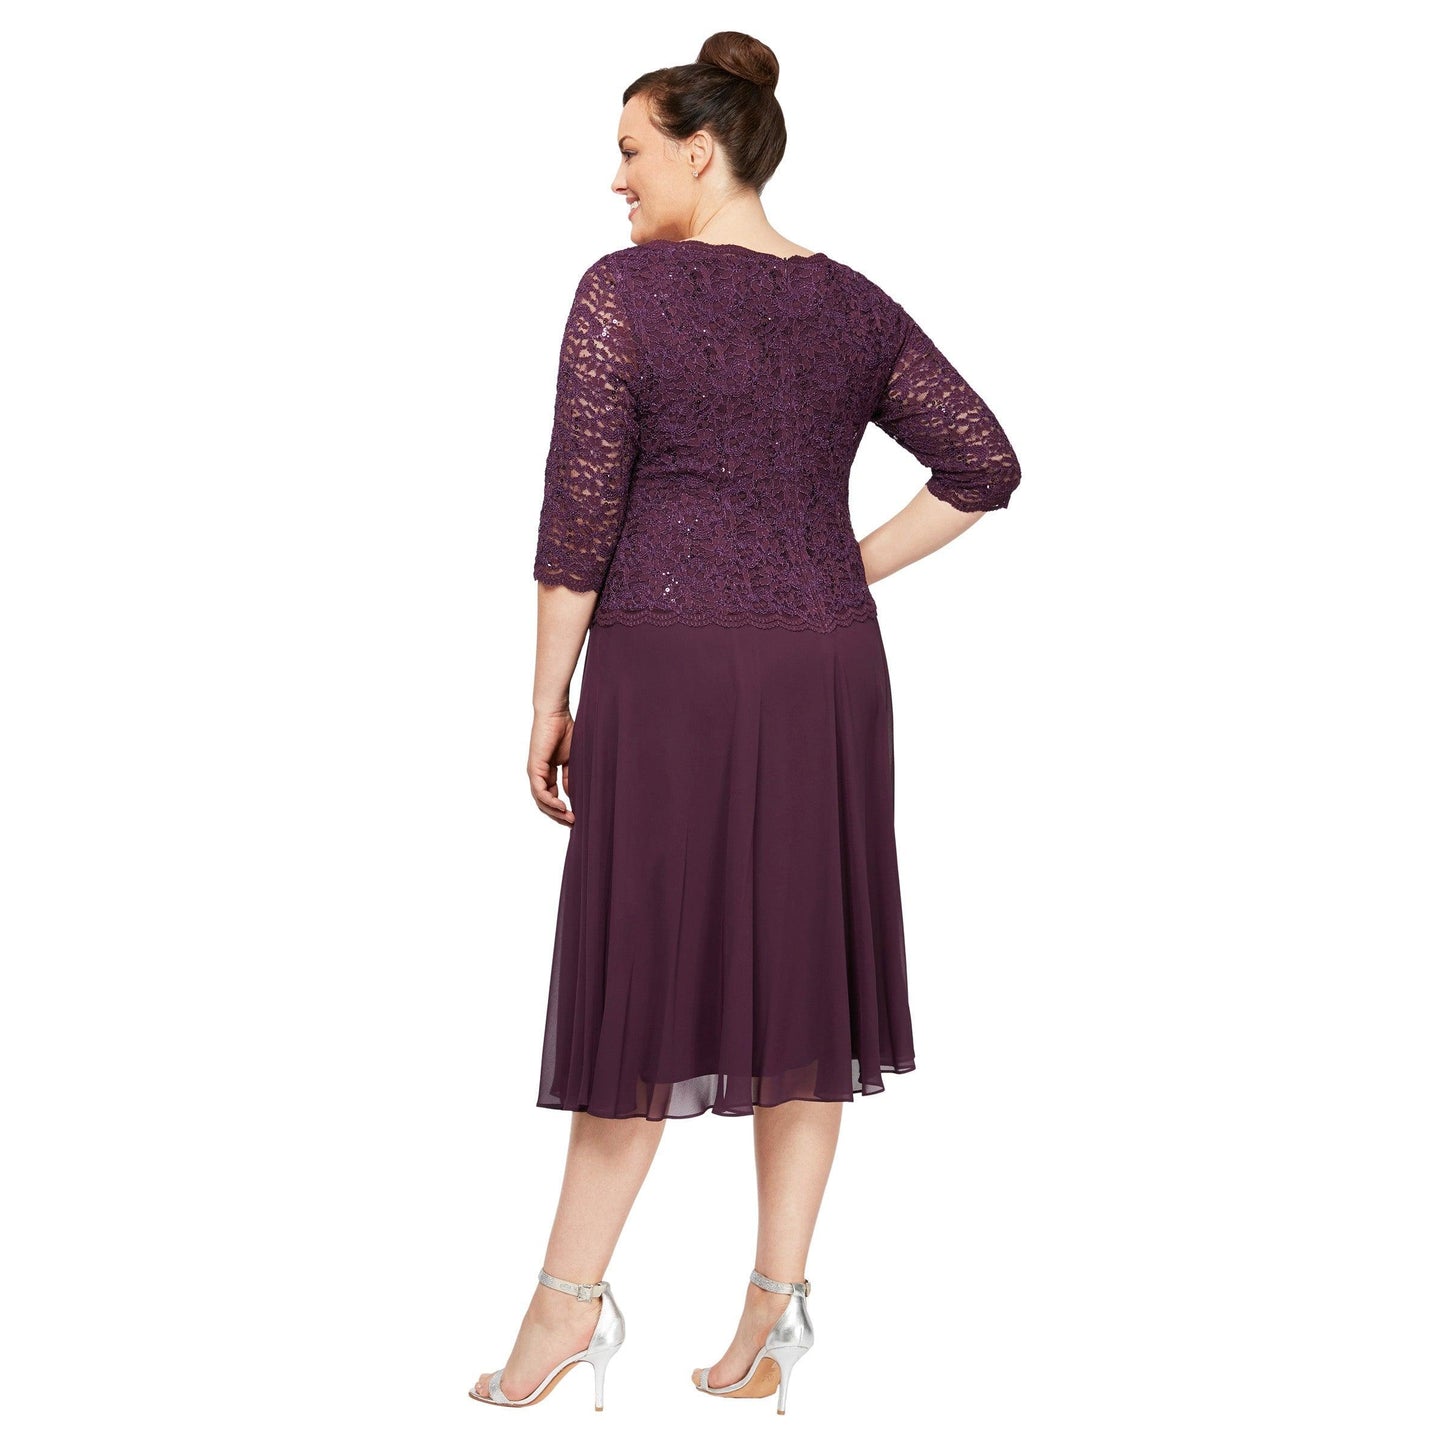 Alex Evenings Short Plus Size Chiffon Dress 4121796 - The Dress Outlet